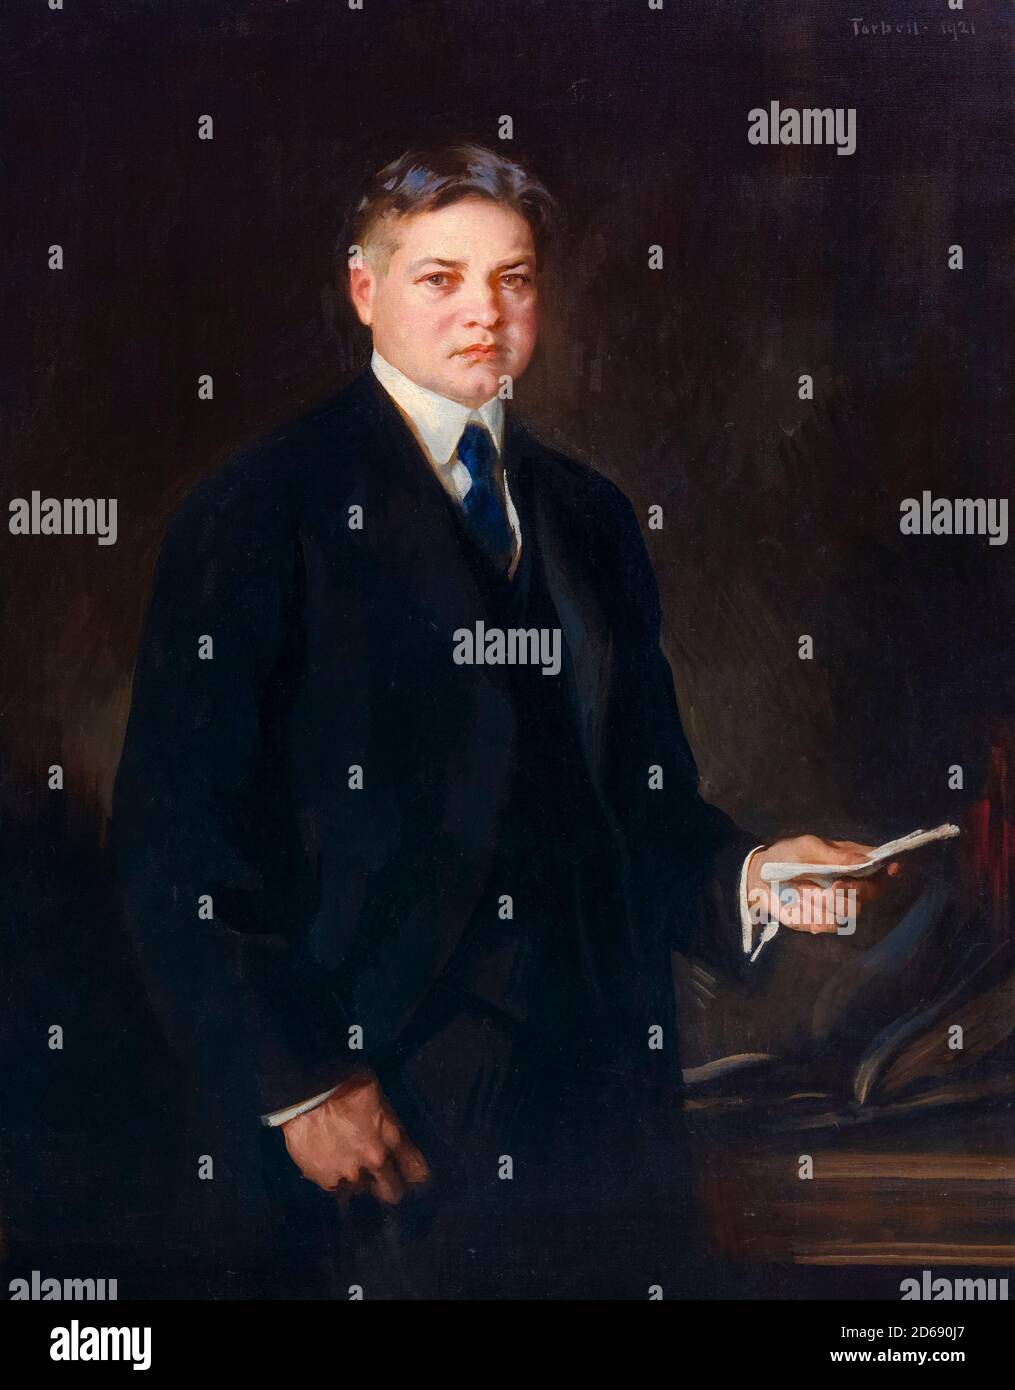 Herbert Hoover (1874-1964), amerikanischer Politiker, Geschäftsmann und Ingenieur, der als 31. Präsident der Vereinigten Staaten diente, Porträtmalerei von Edmund Charles Tarbell, 1921 Stockfoto